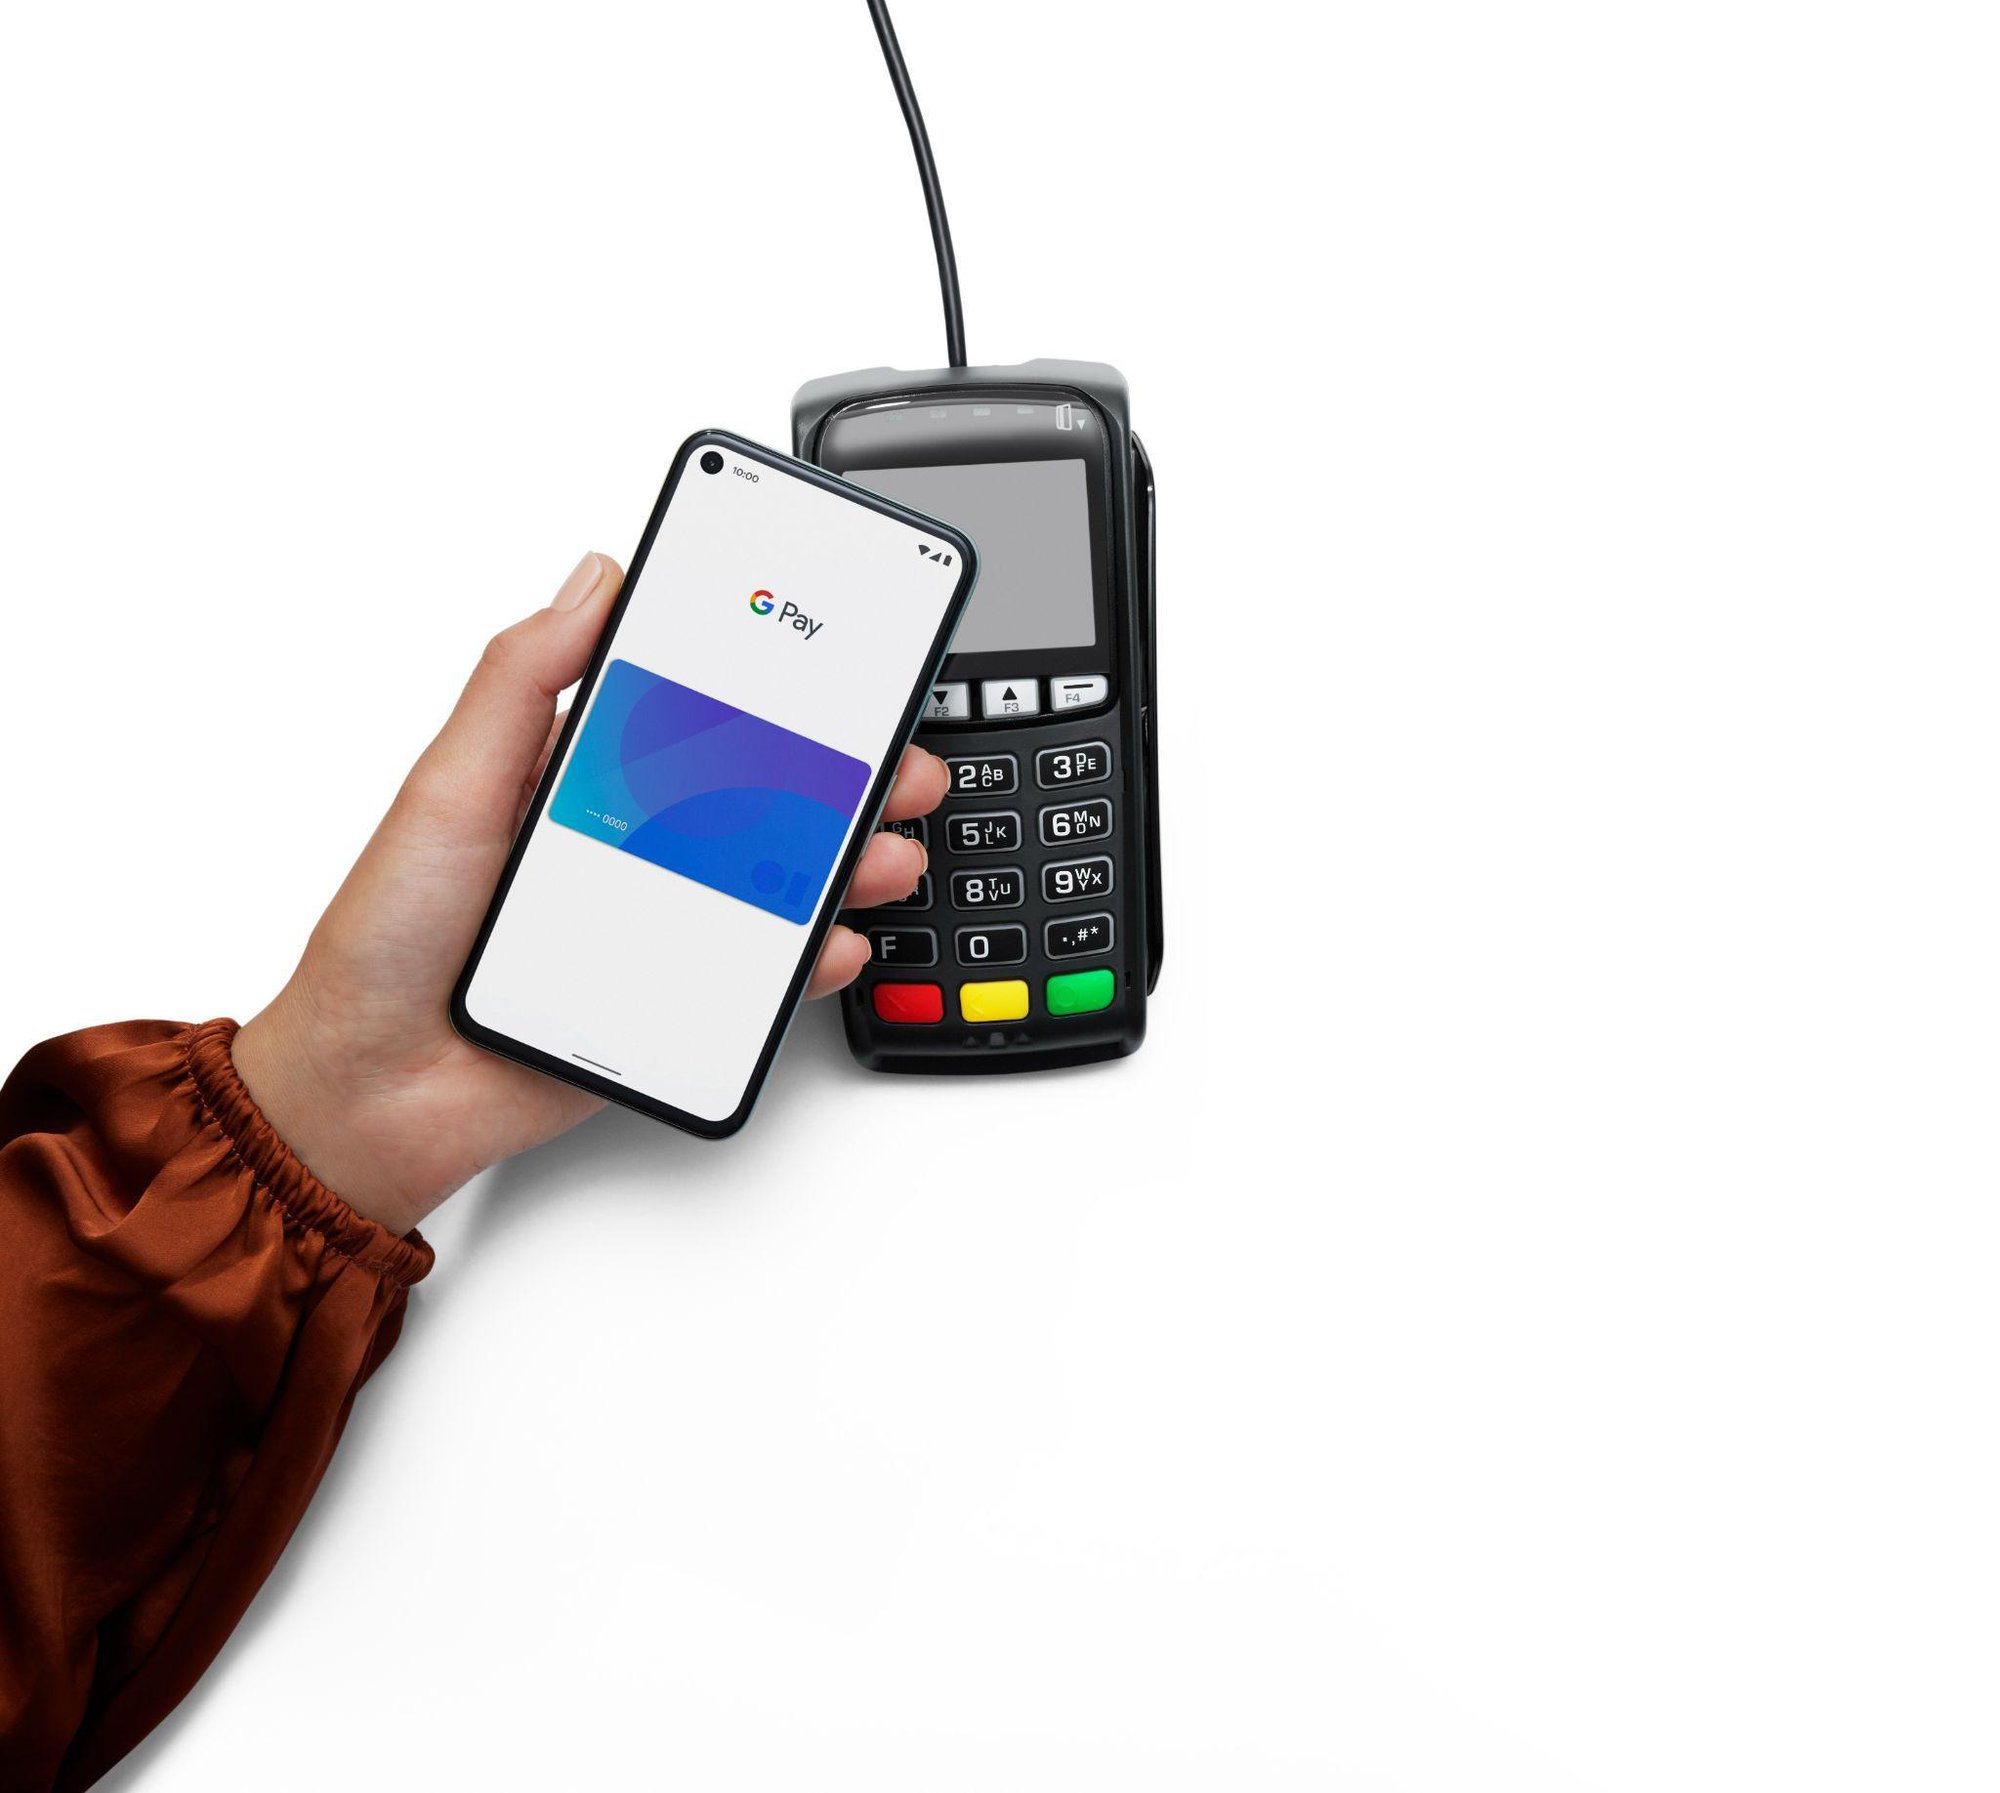 Tín đồ thanh toán số nhận ngay 100k vào thẻ tín dụng Techcombank Visa khi giao dịch tại Google Pay - Ảnh 1.